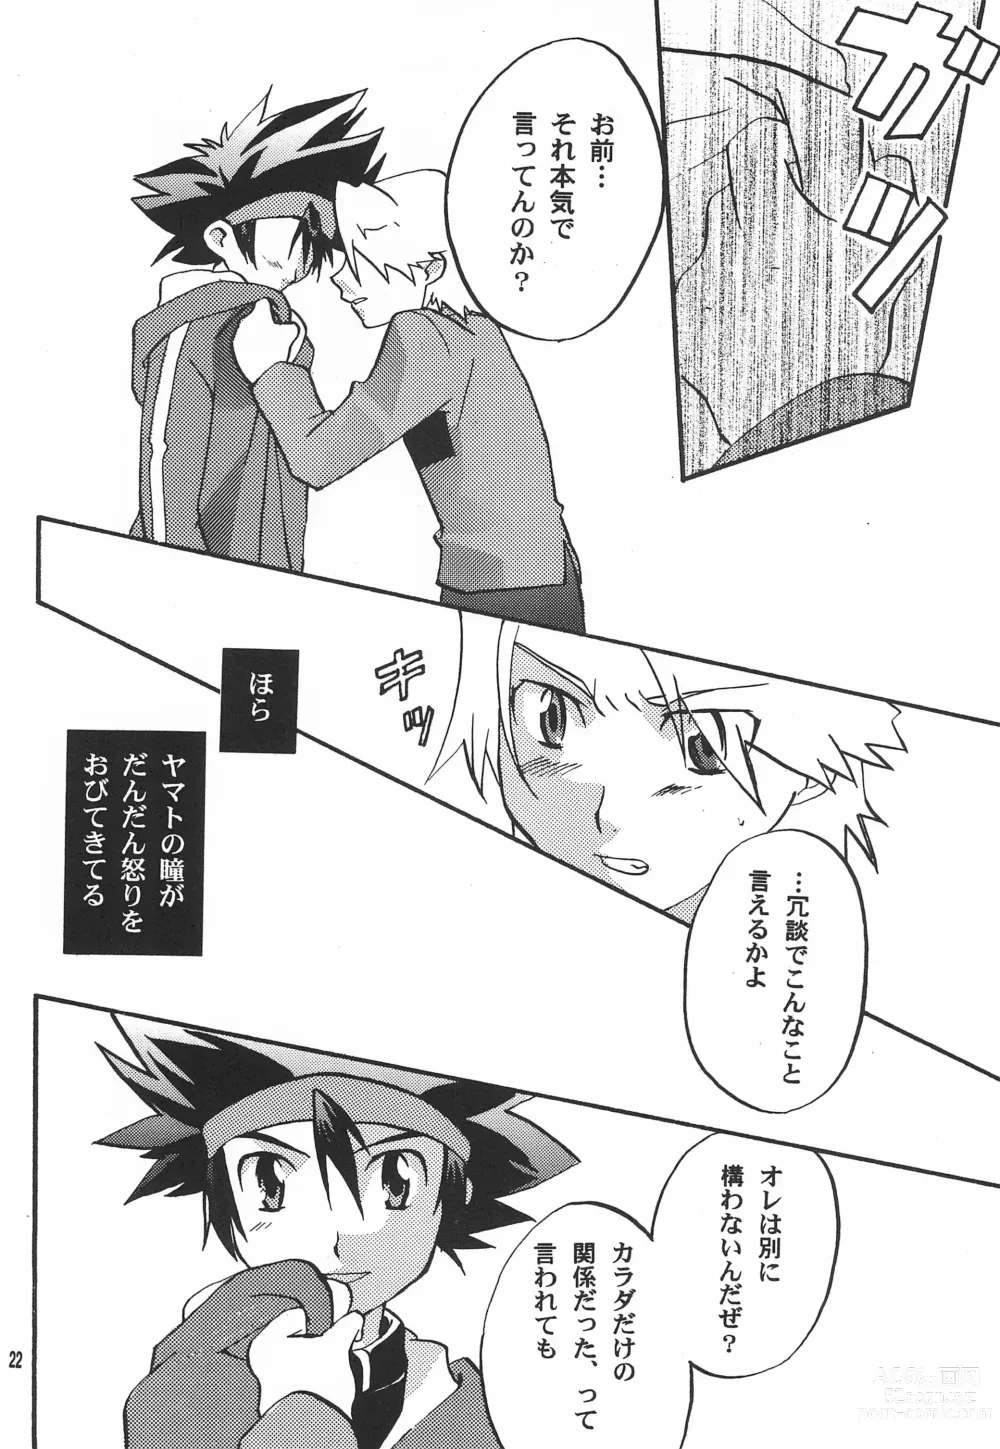 Page 24 of doujinshi Utsukushiki Samazama no Yume